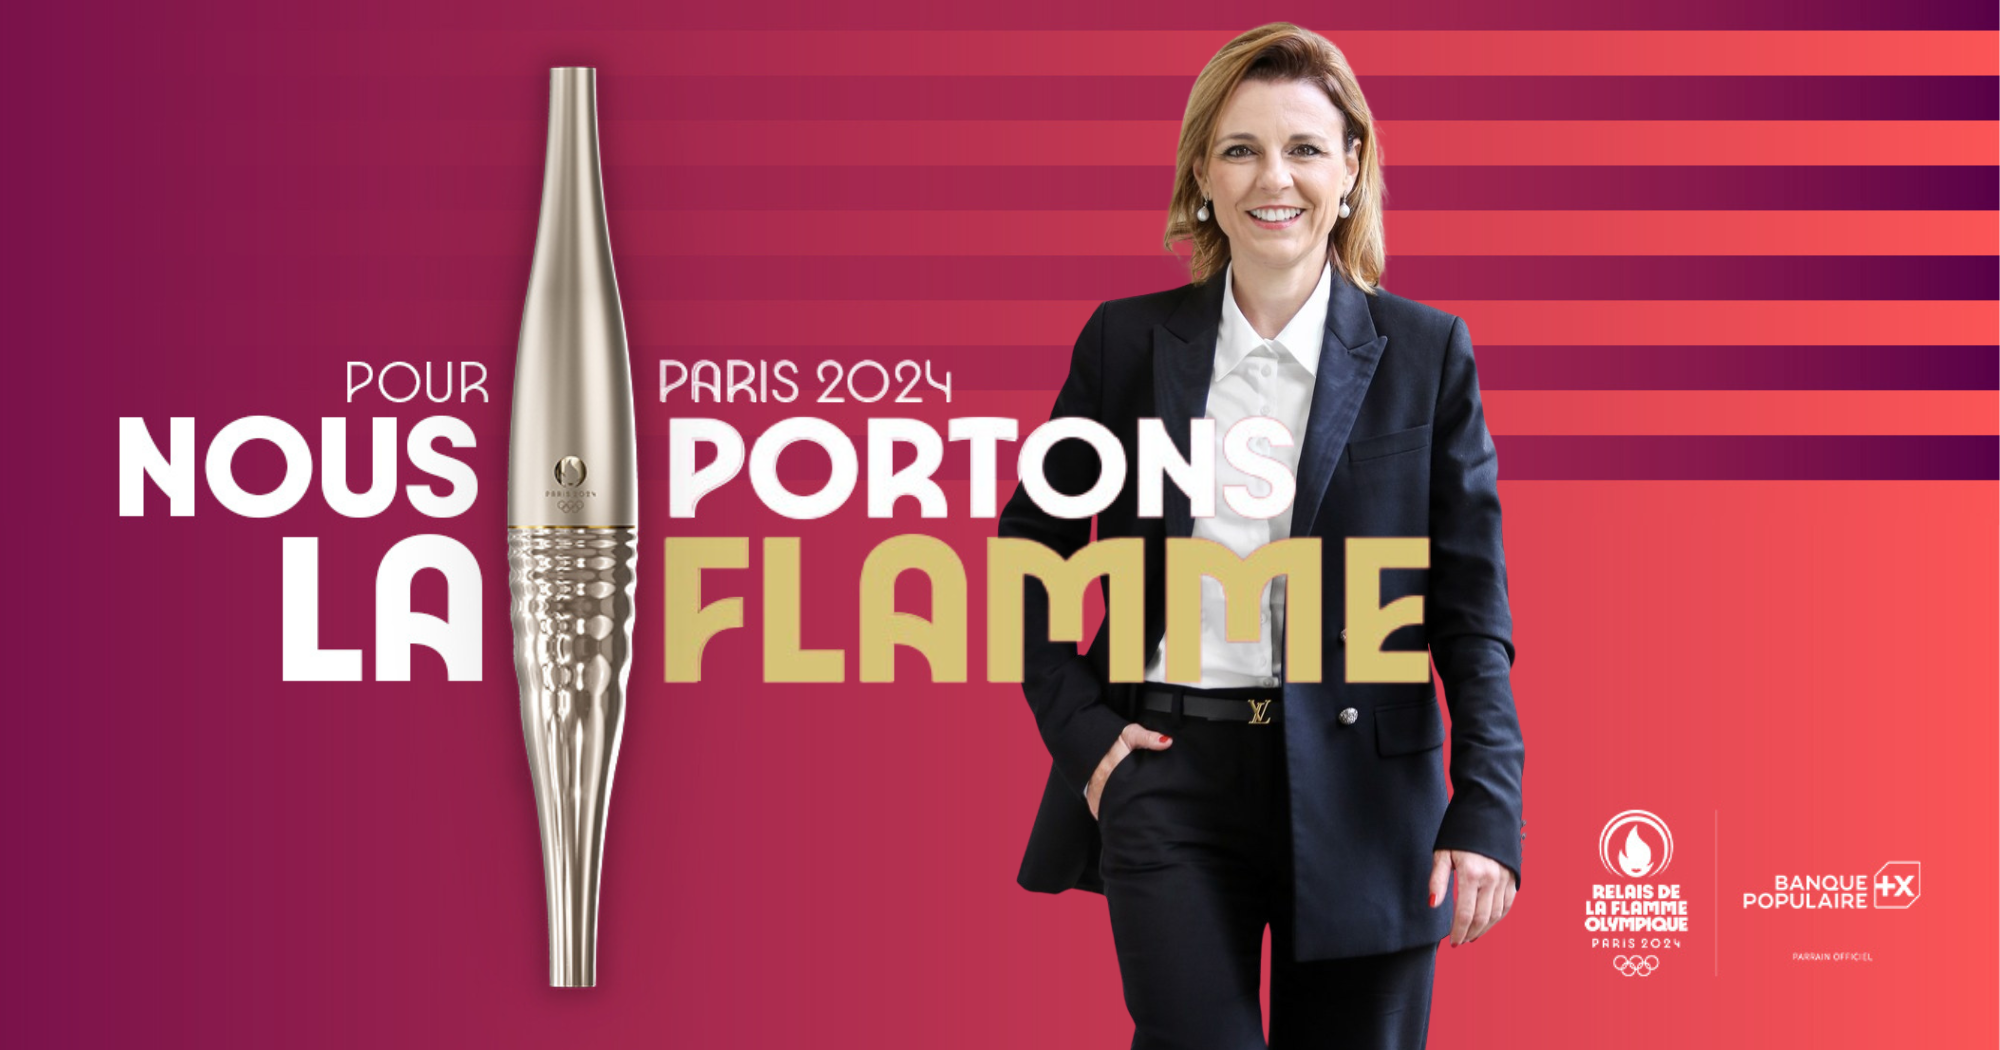 Chavin - Mathilde BOULACHIN porteuse de la flamme olympique de Paris 2024